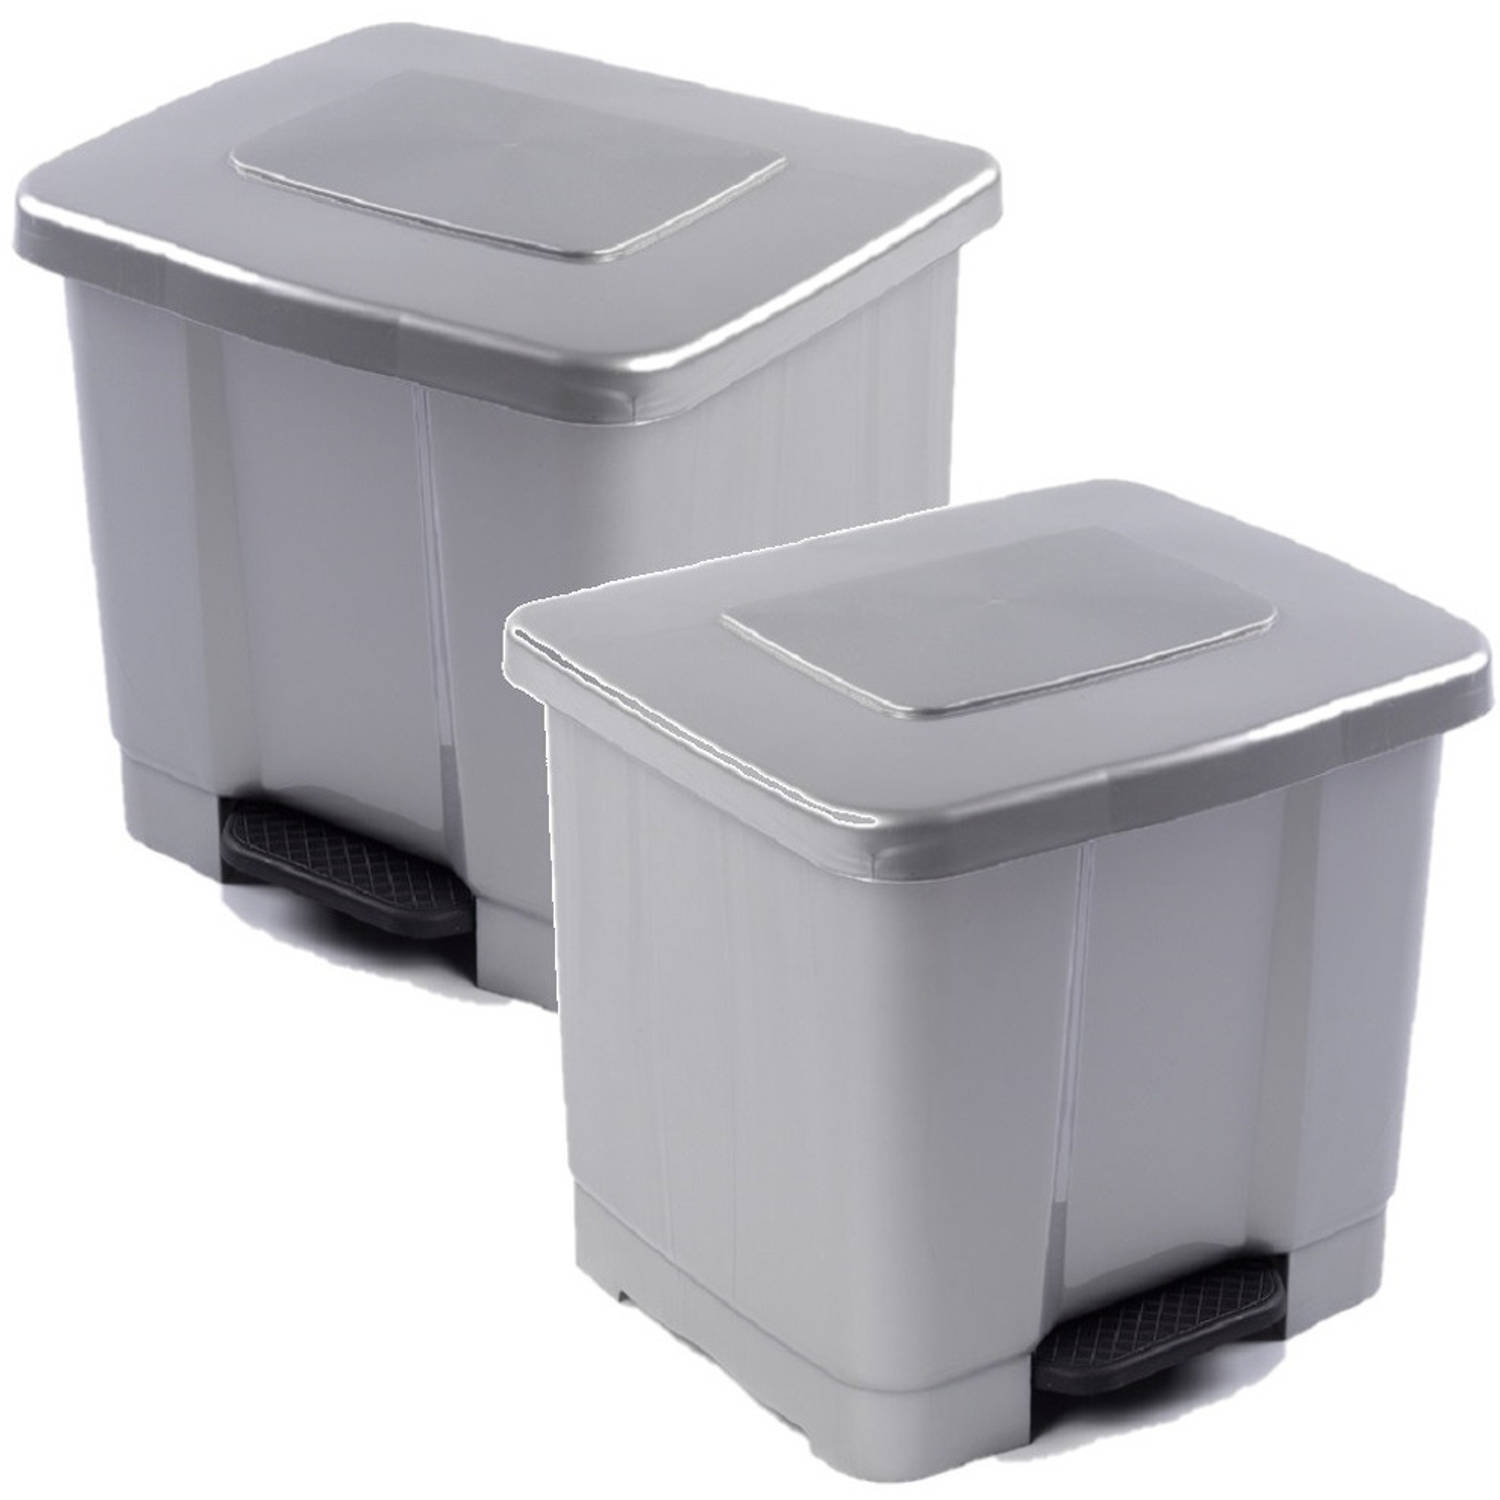 Forte Plastics 2x stuks dubbele afvalemmer/vuilnisemmer 35 liter met deksel en pedaal - Zilver- vuilnisbakken/prullenbakken - Kantoor/keuken